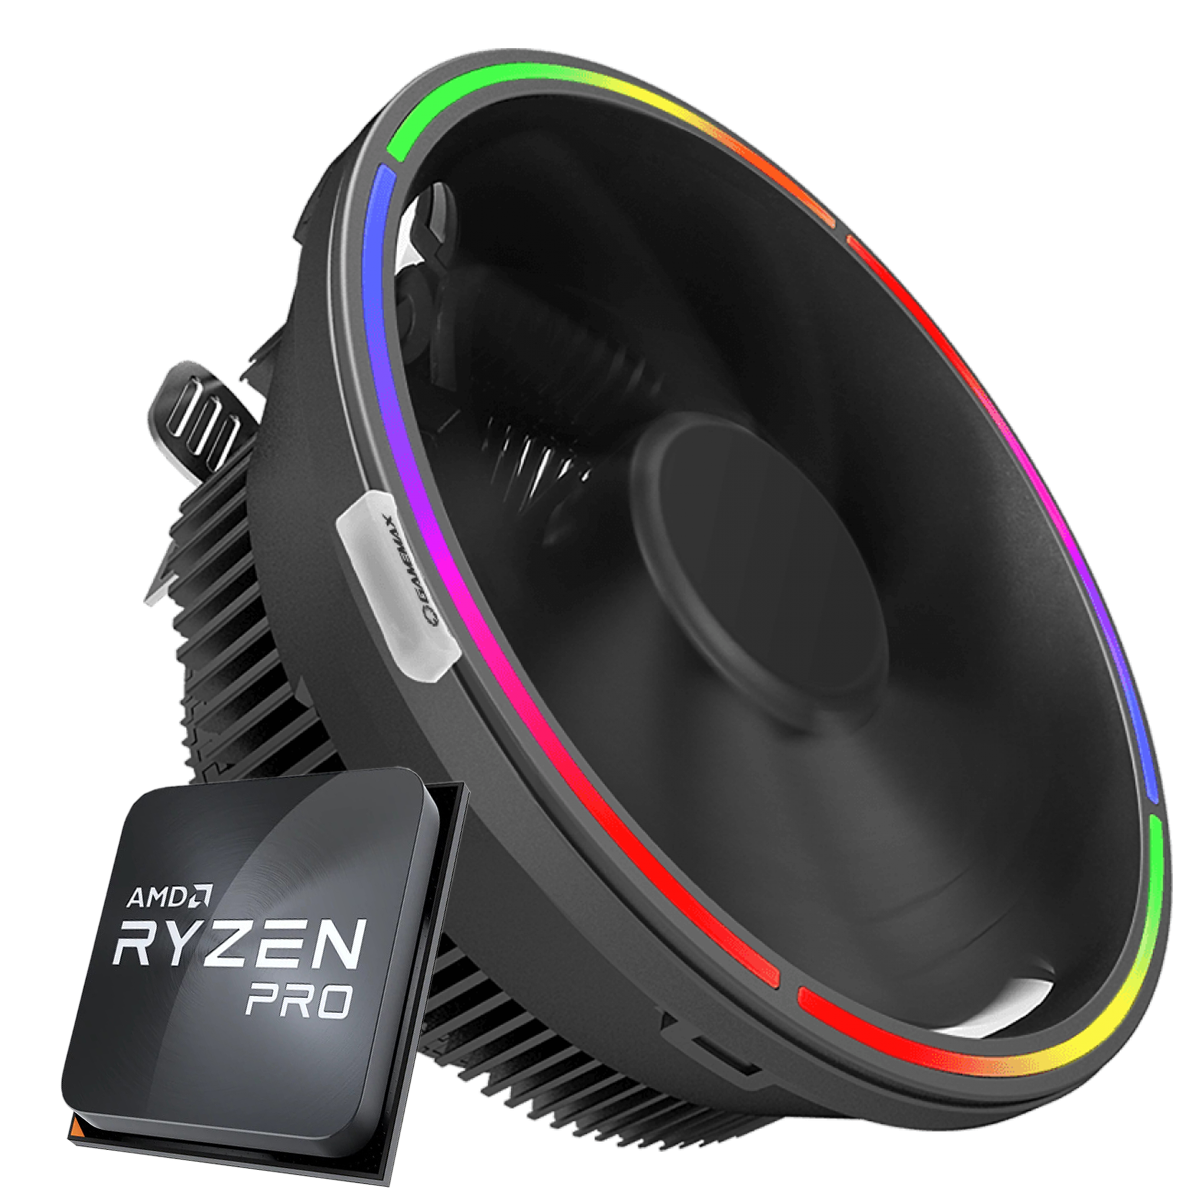 Kit Ryzen 5 PRO 4650G 4.2GHz + Cooler DeepCool Gammaxx Gamma 200